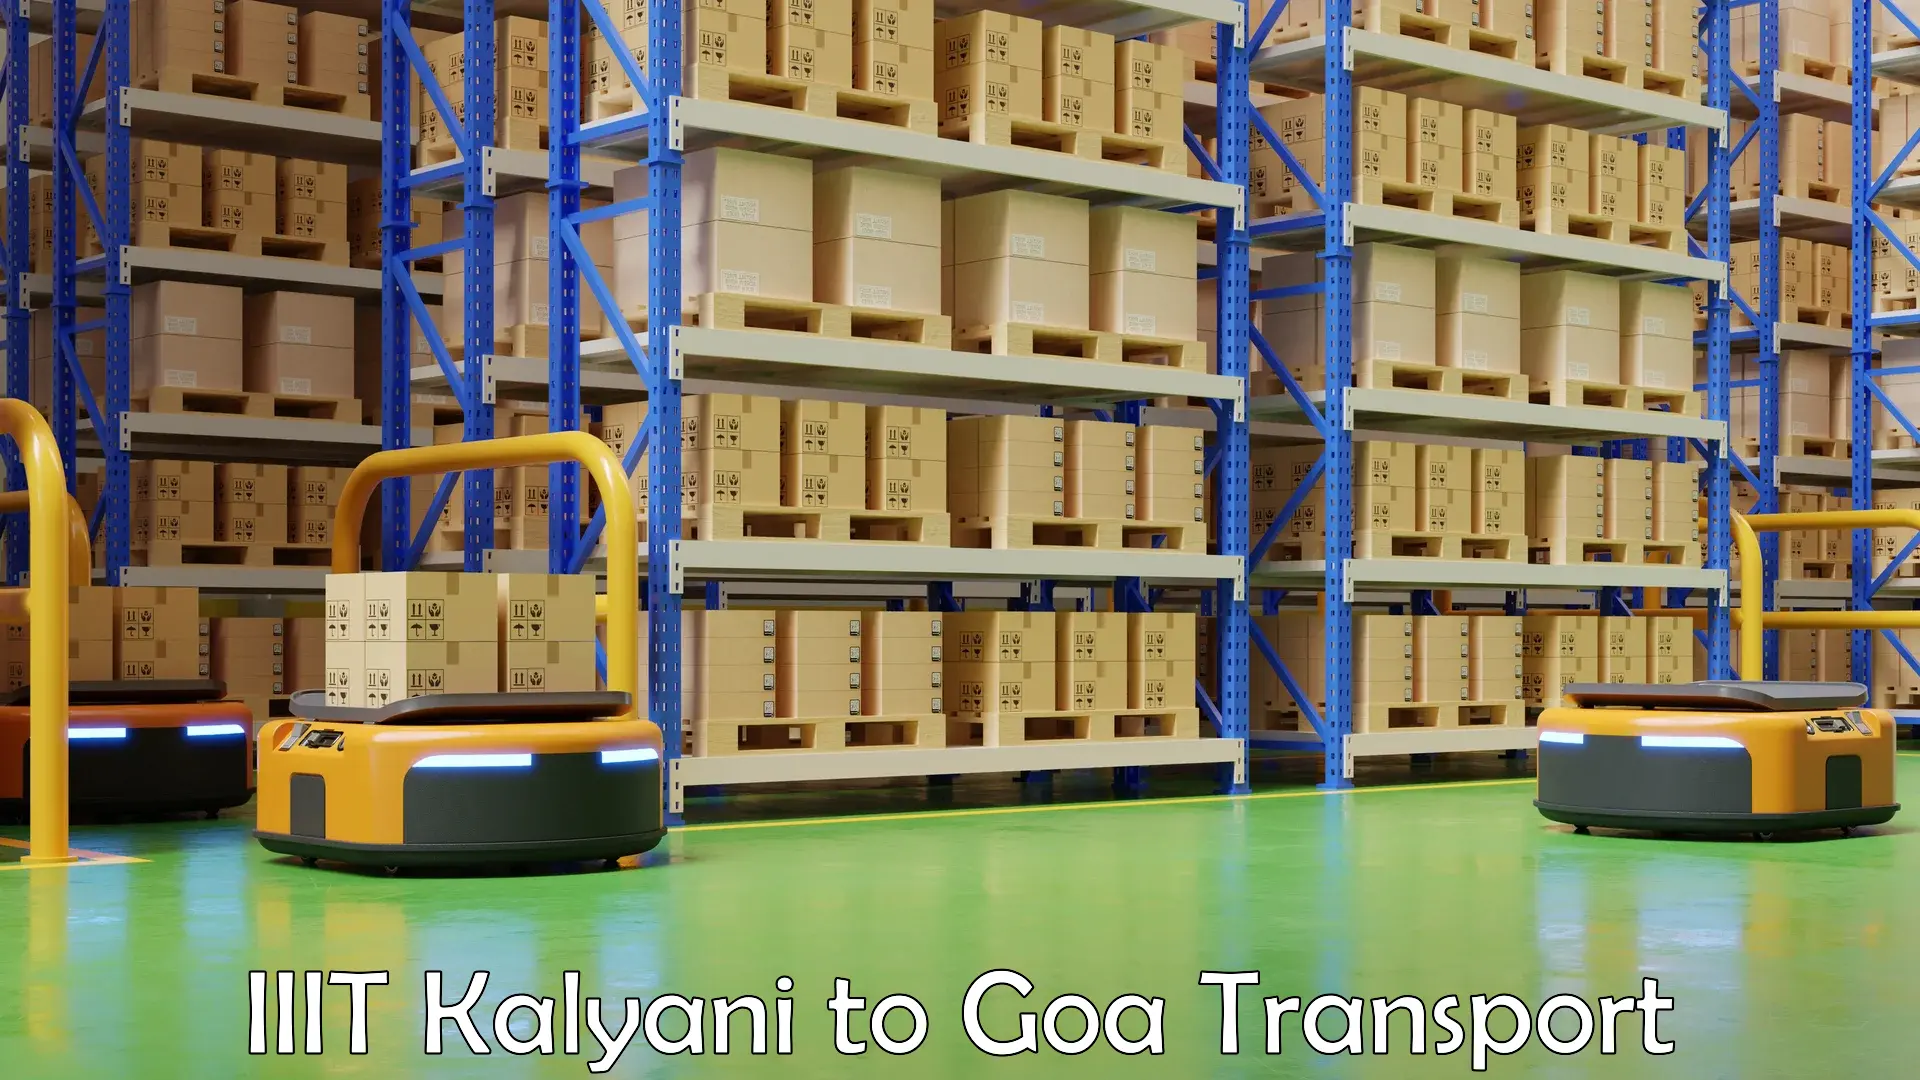 Nearby transport service IIIT Kalyani to IIT Goa